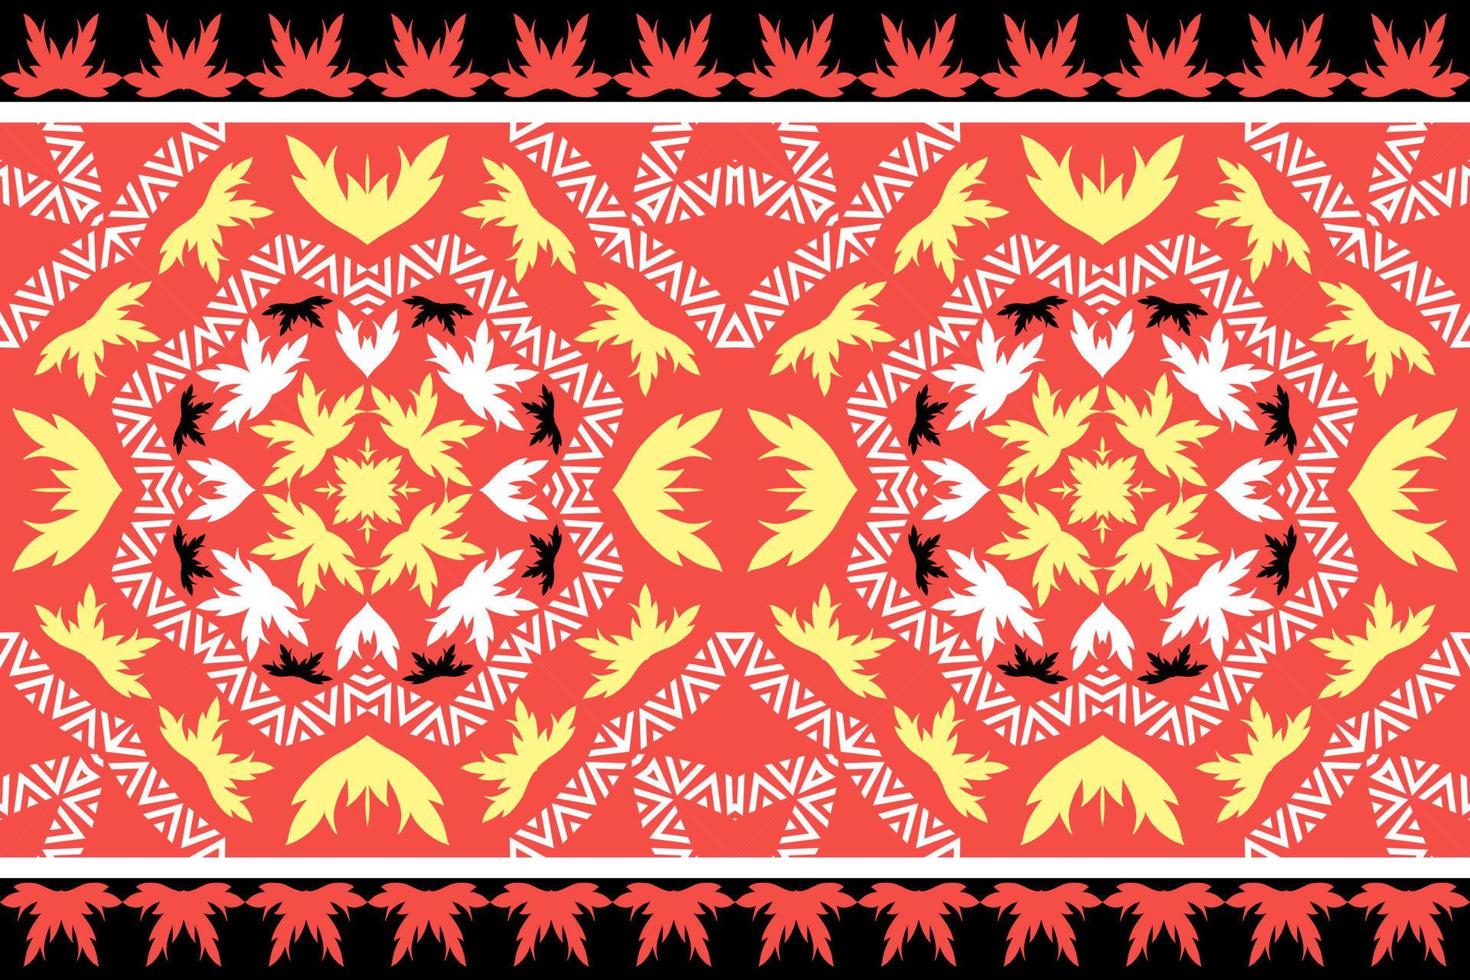 geometrische ethnische orientalische traditionelle pattern.figure tribal Stickerei style.design für Tapeten, Kleidung, Verpackung, Stoff, Vektorgrafik. vektor